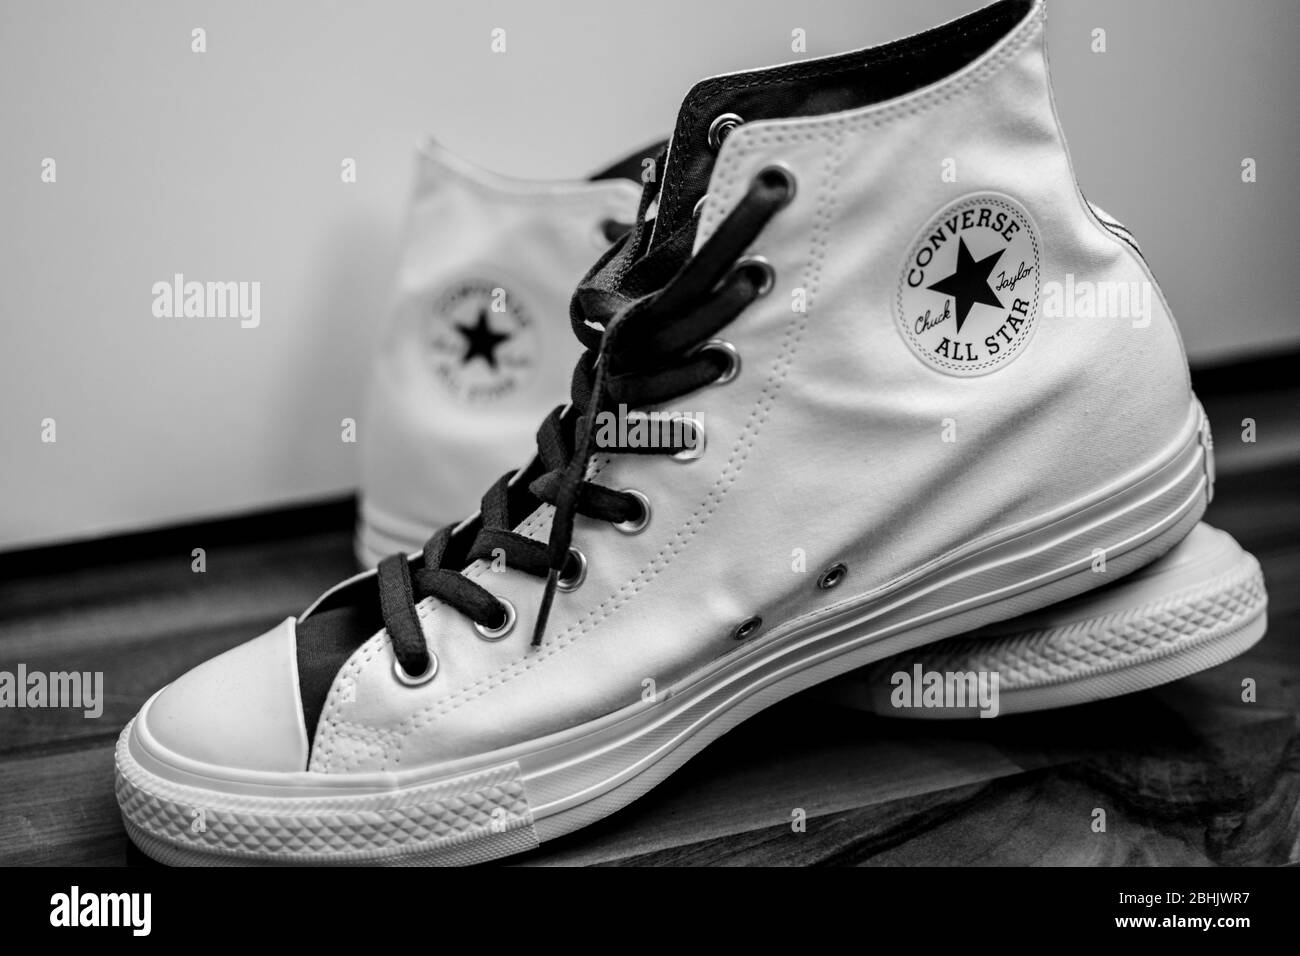 Orgulloso ratón nombre de la marca Sneakers Converse en blanco y negro Fotografía de stock - Alamy